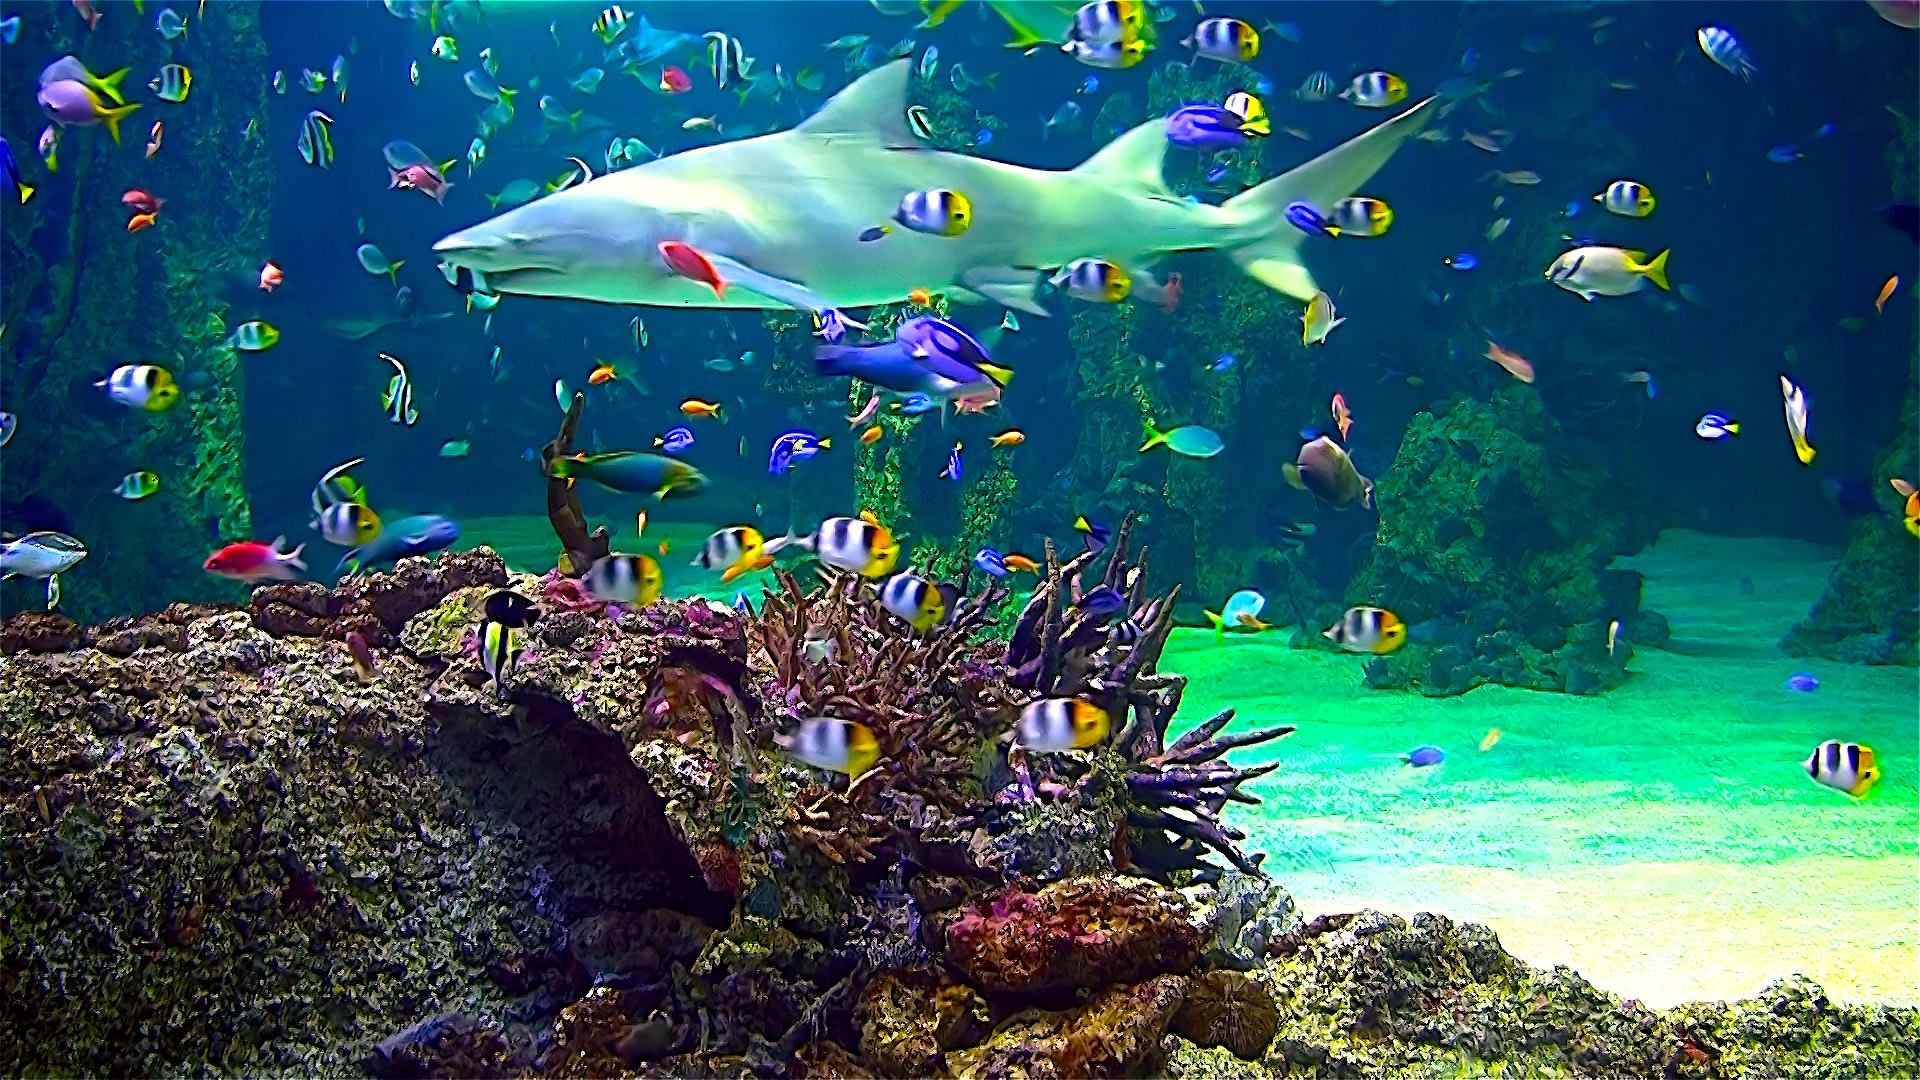 Aquarium Live Wallpaper For iPhone App Posts